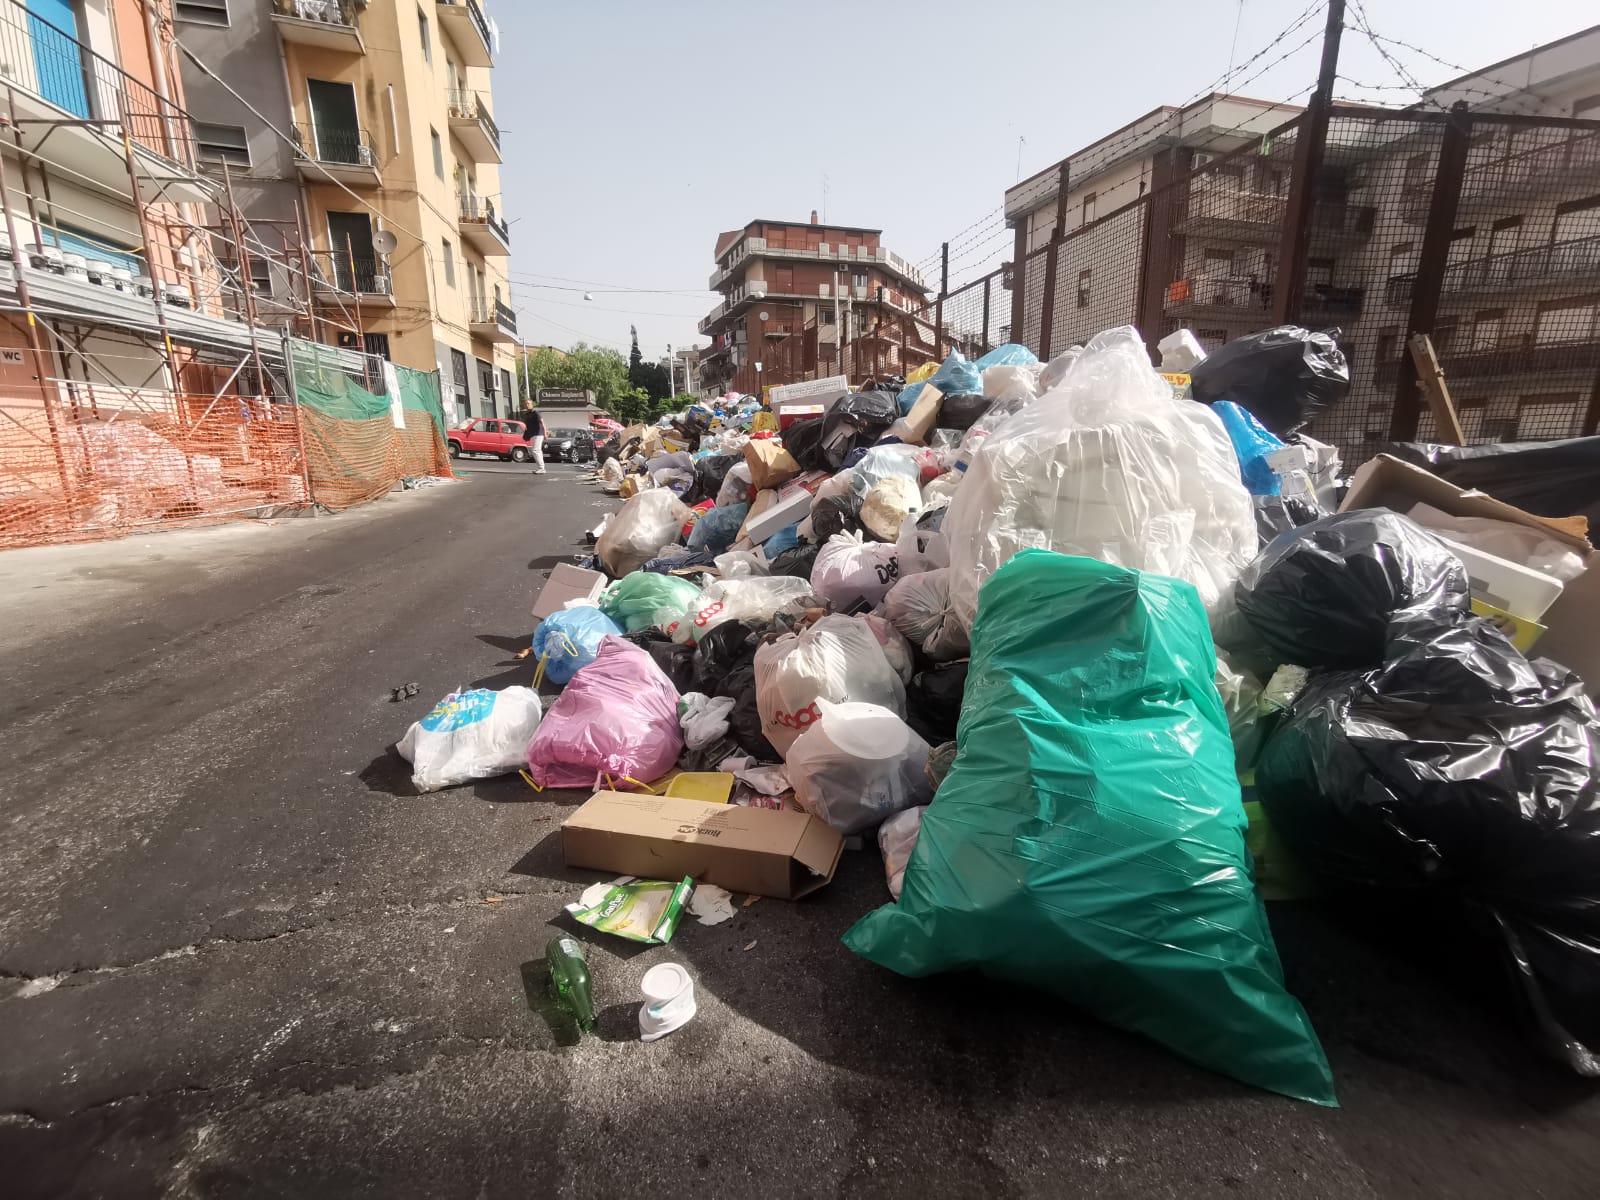 Emergenza rifiuti a Catania, nuovo vertice in Prefettura. La Uil: “Manca Piano rifiuti della Regione”